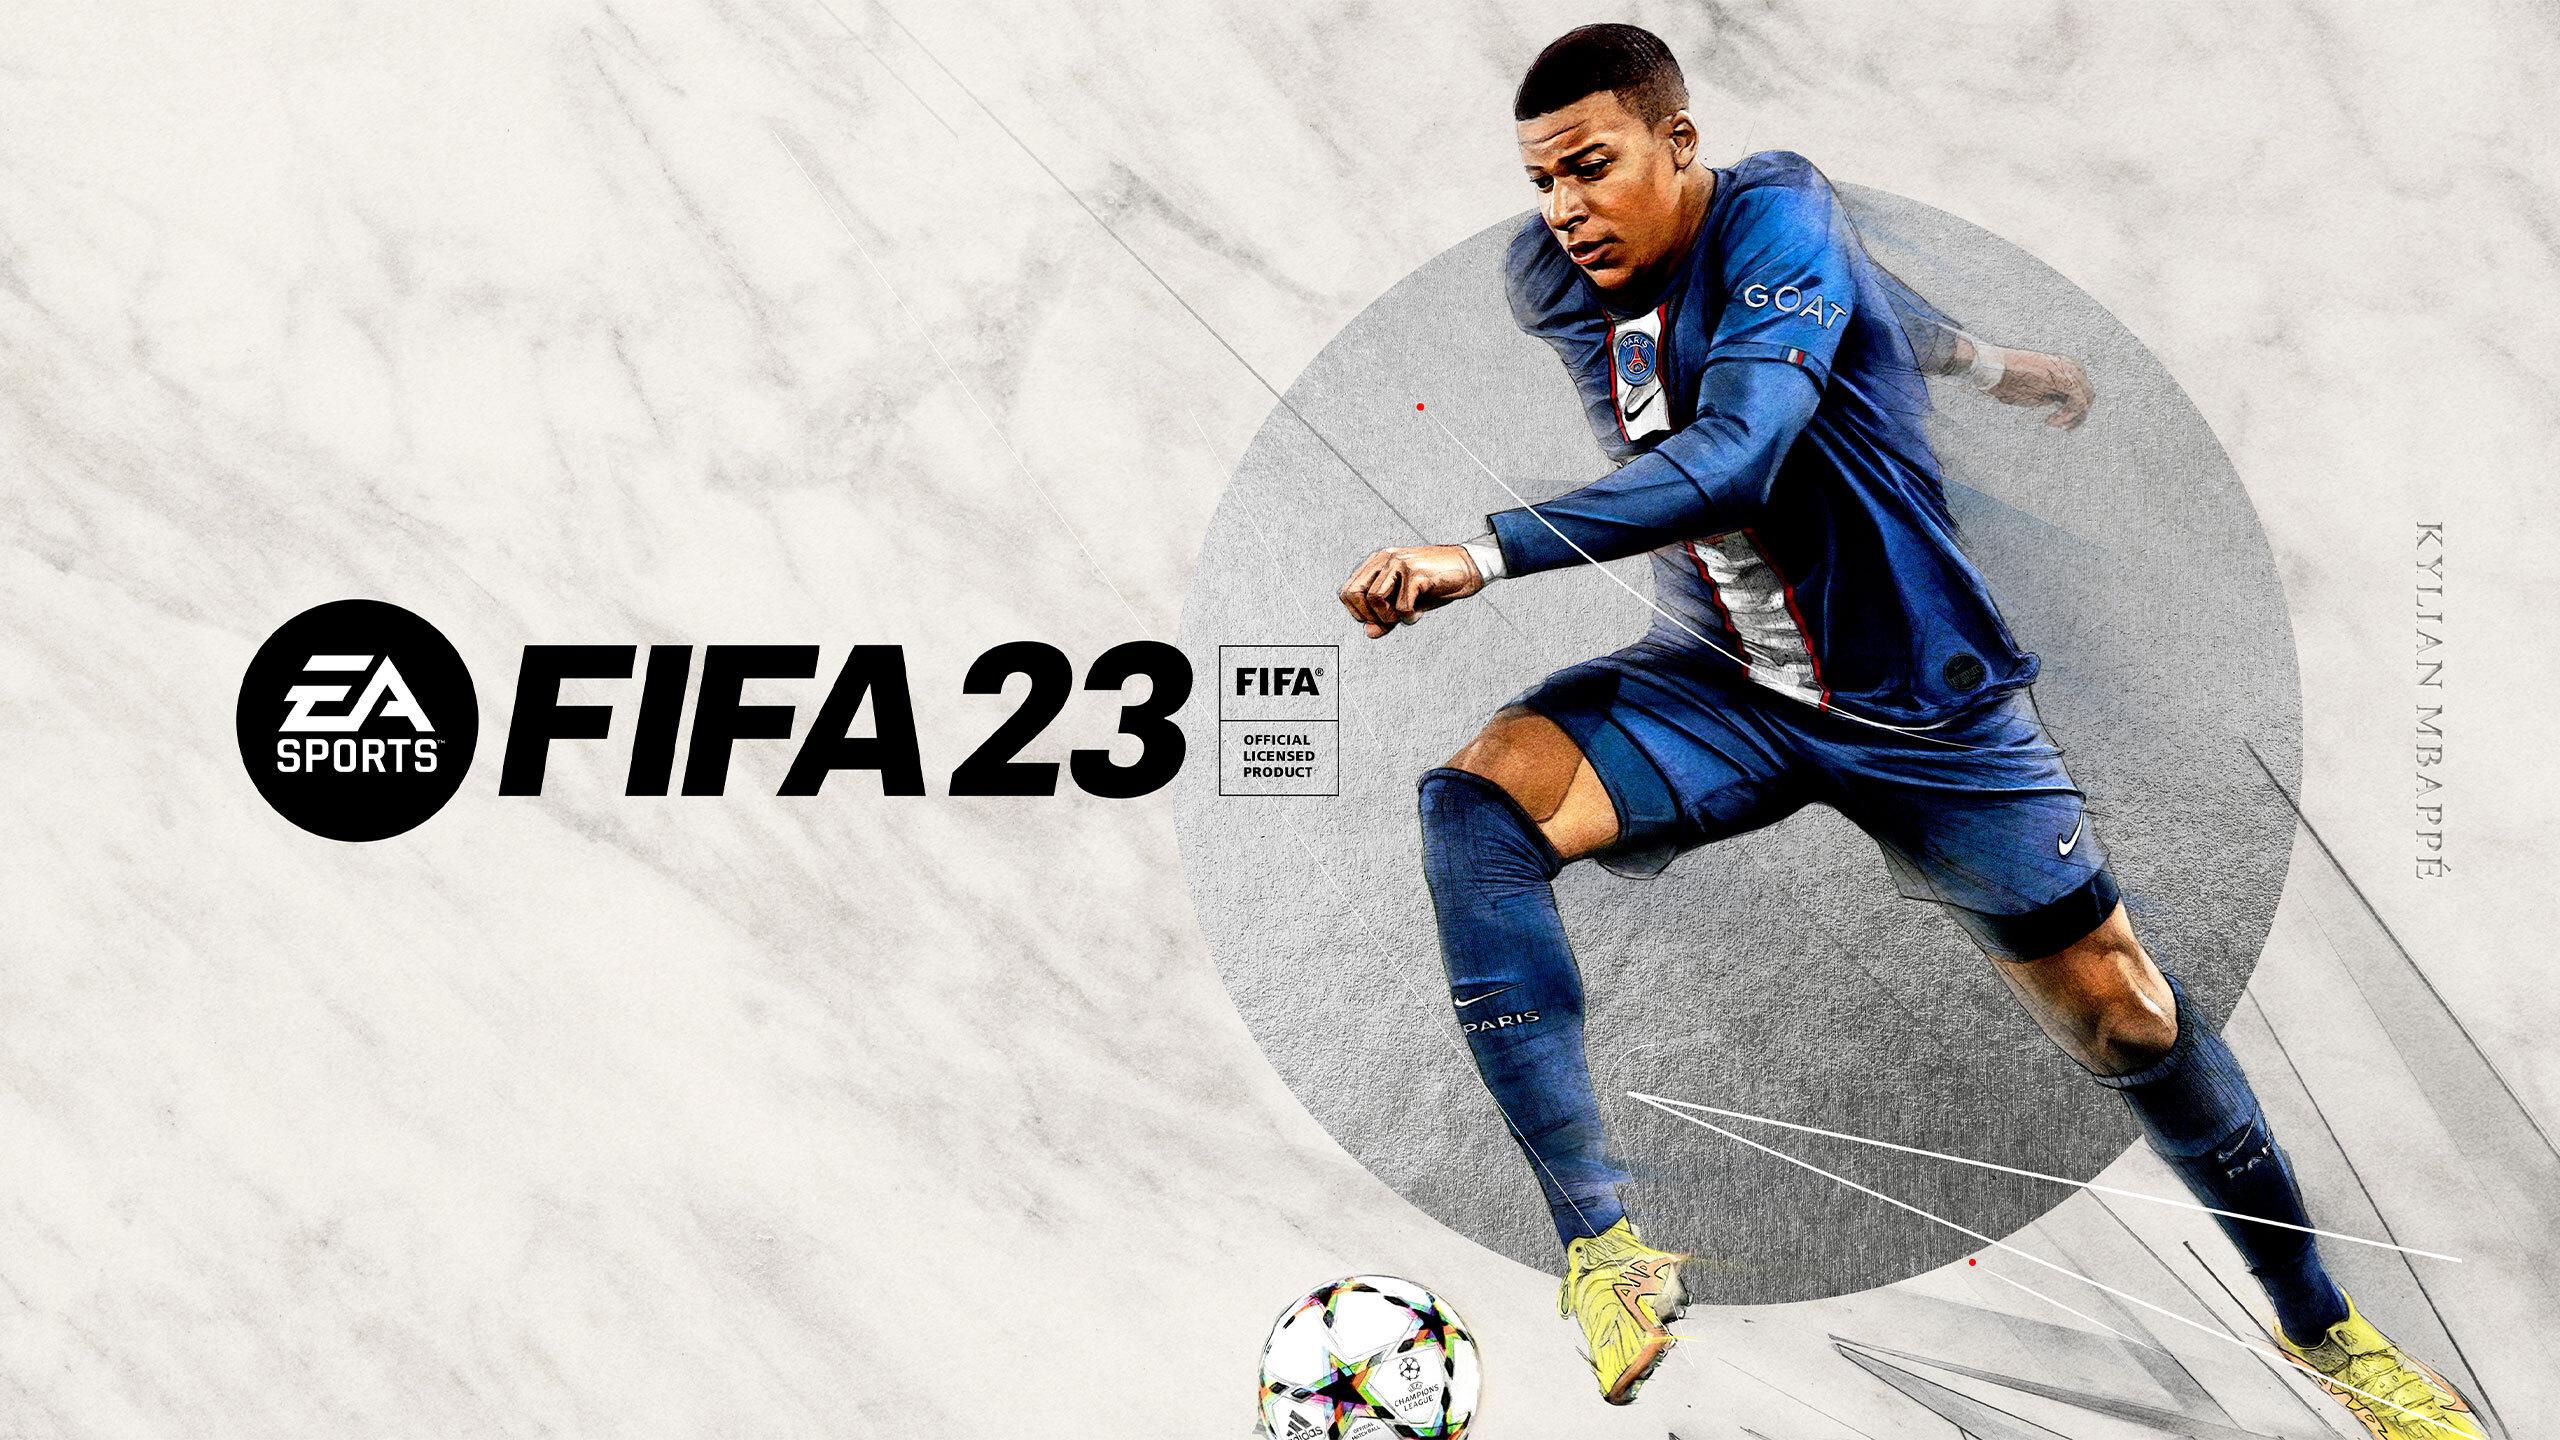 FIFA 23 feature image